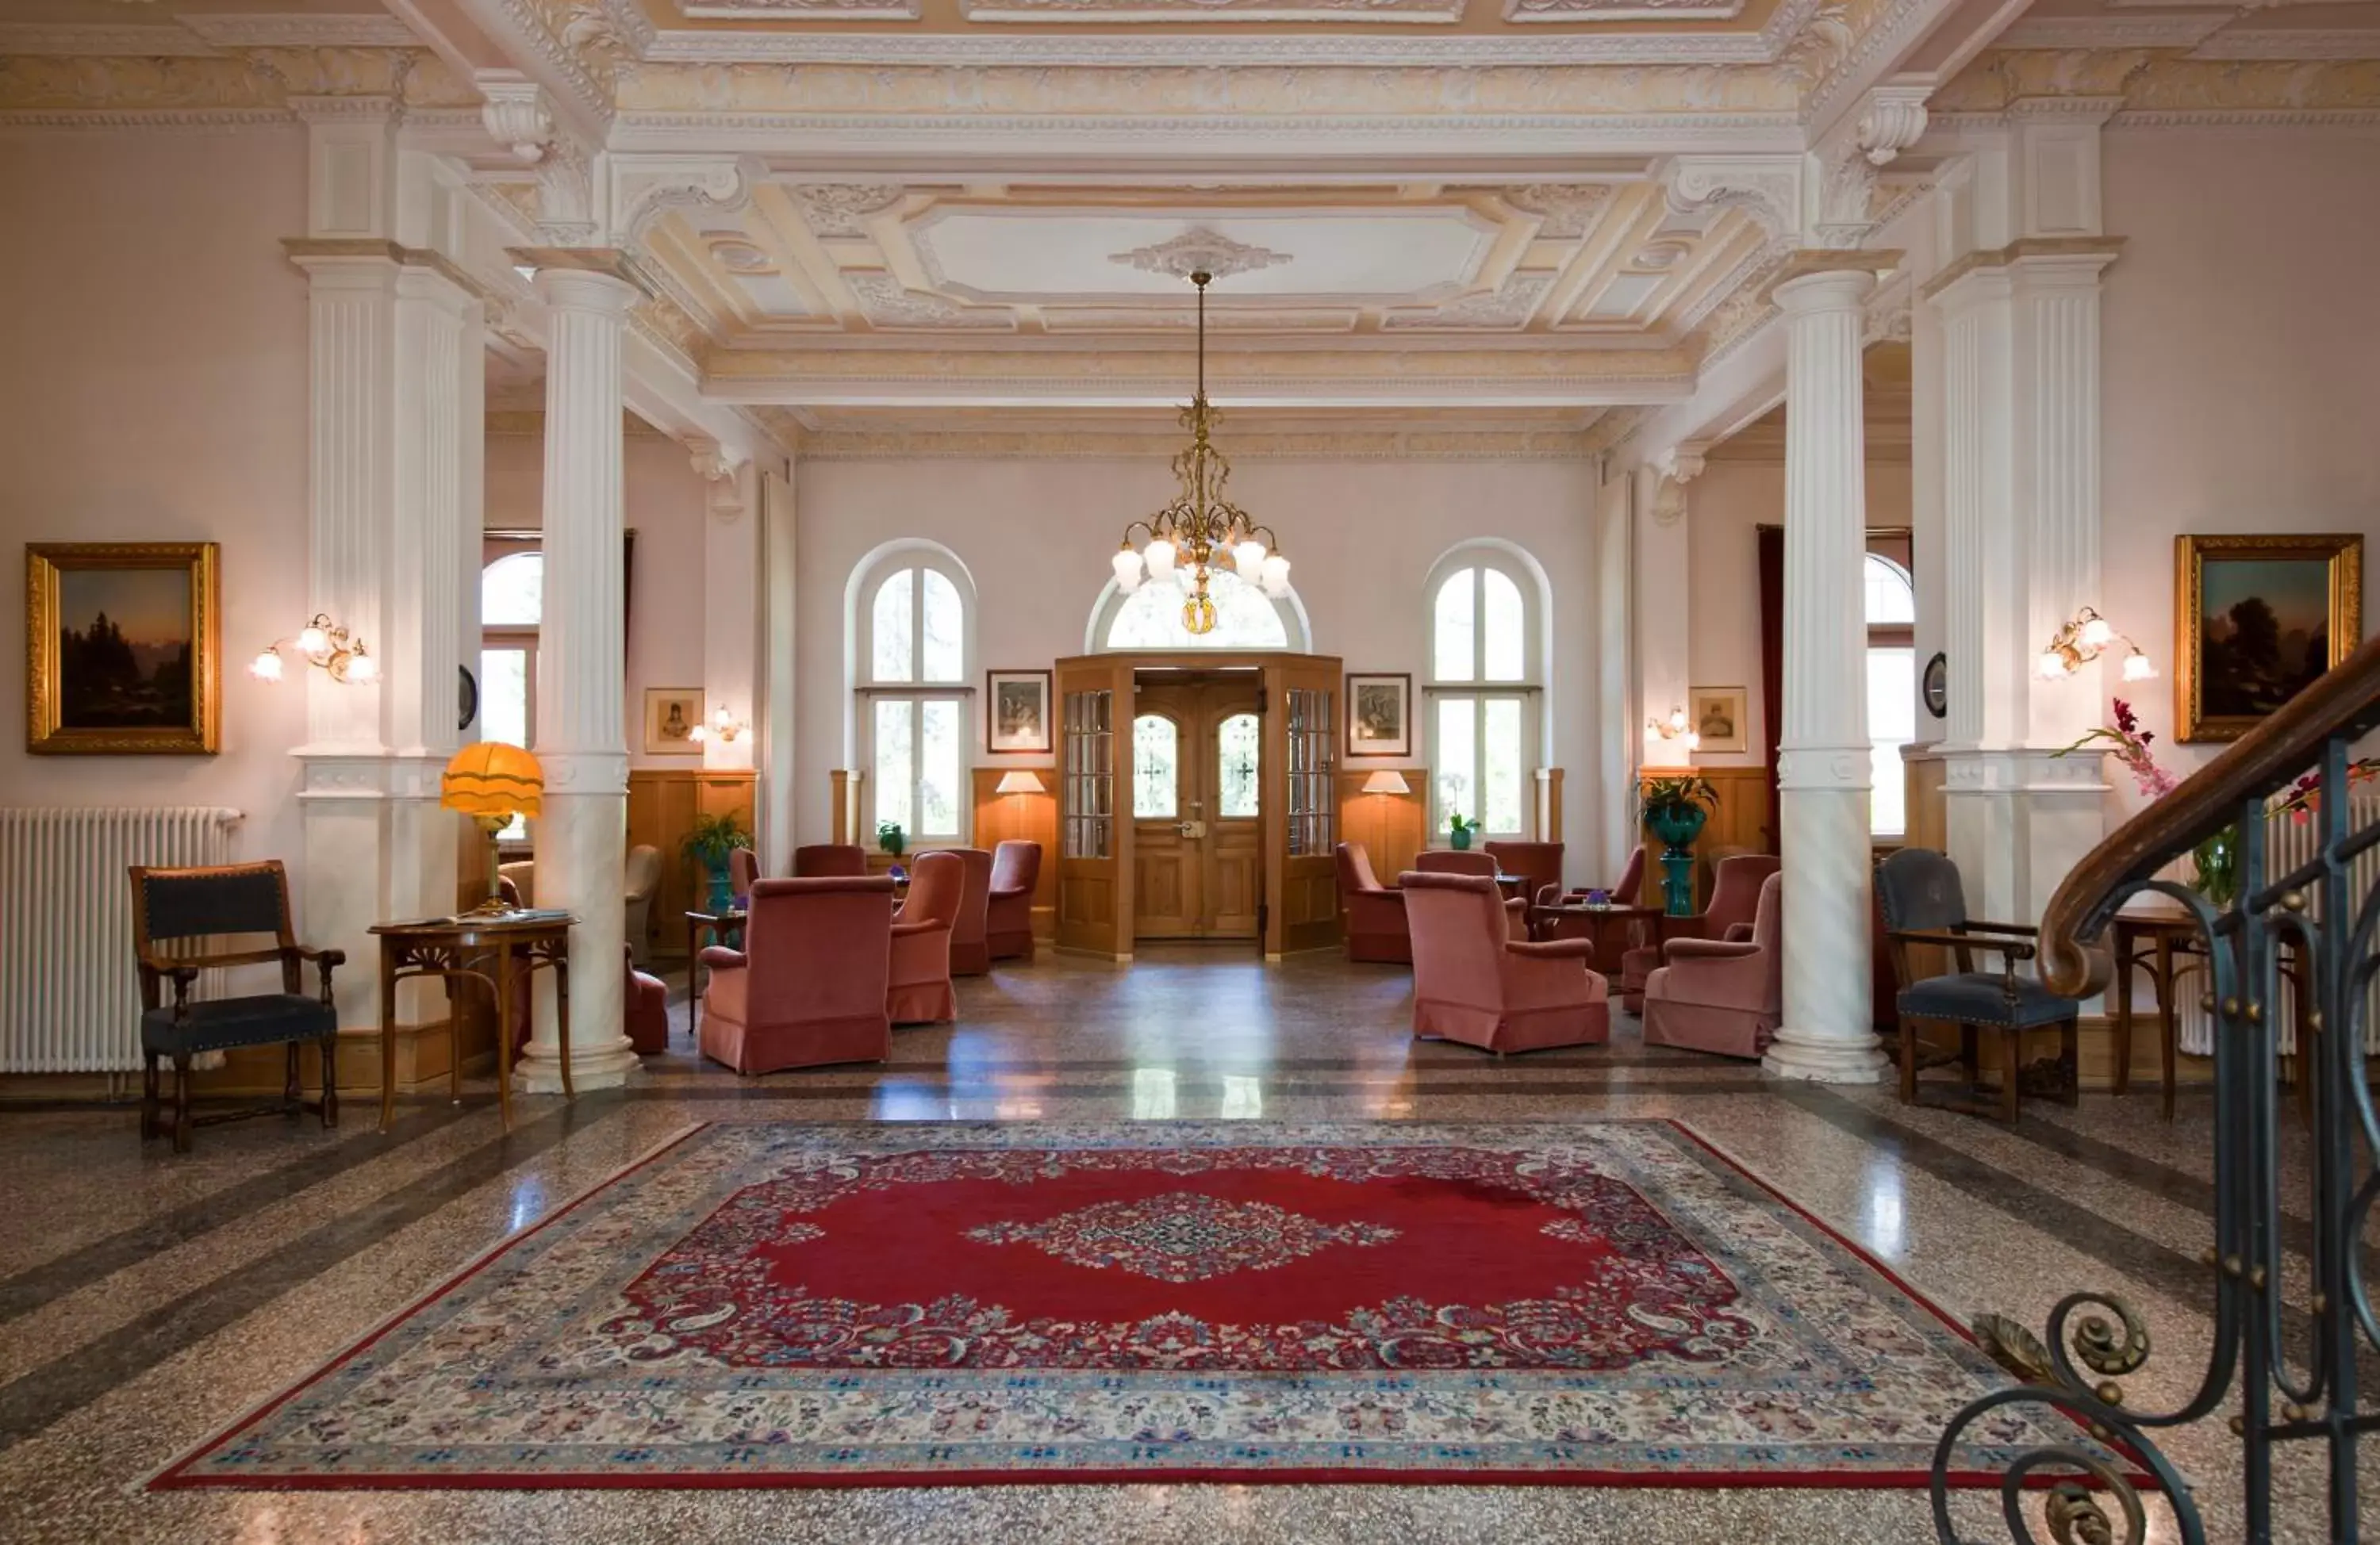 Lobby or reception in Romantik Hotel Schweizerhof & Spa